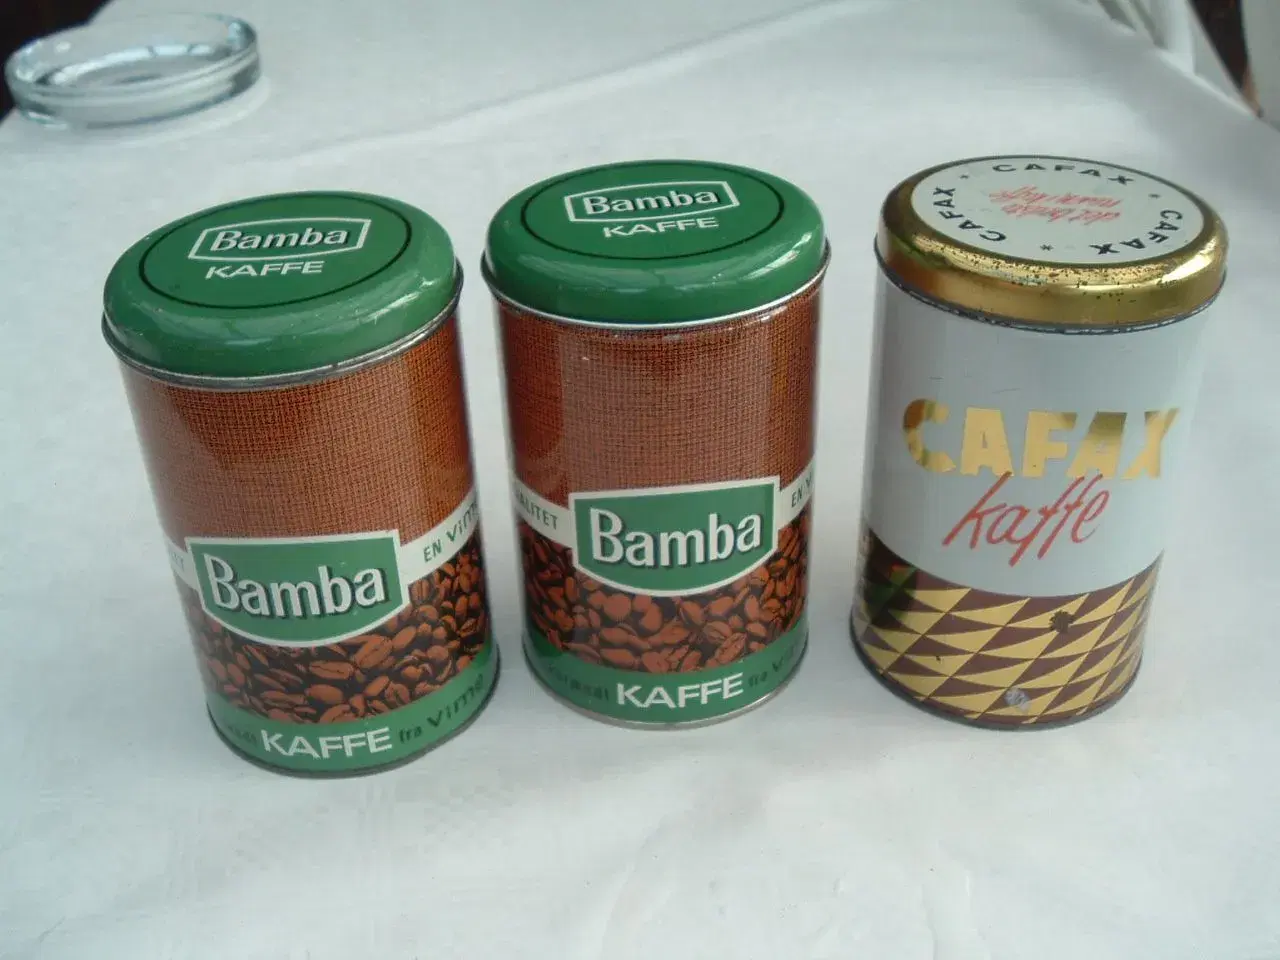 Billede 1 - Kaffedåser fra Bamba og Cafax